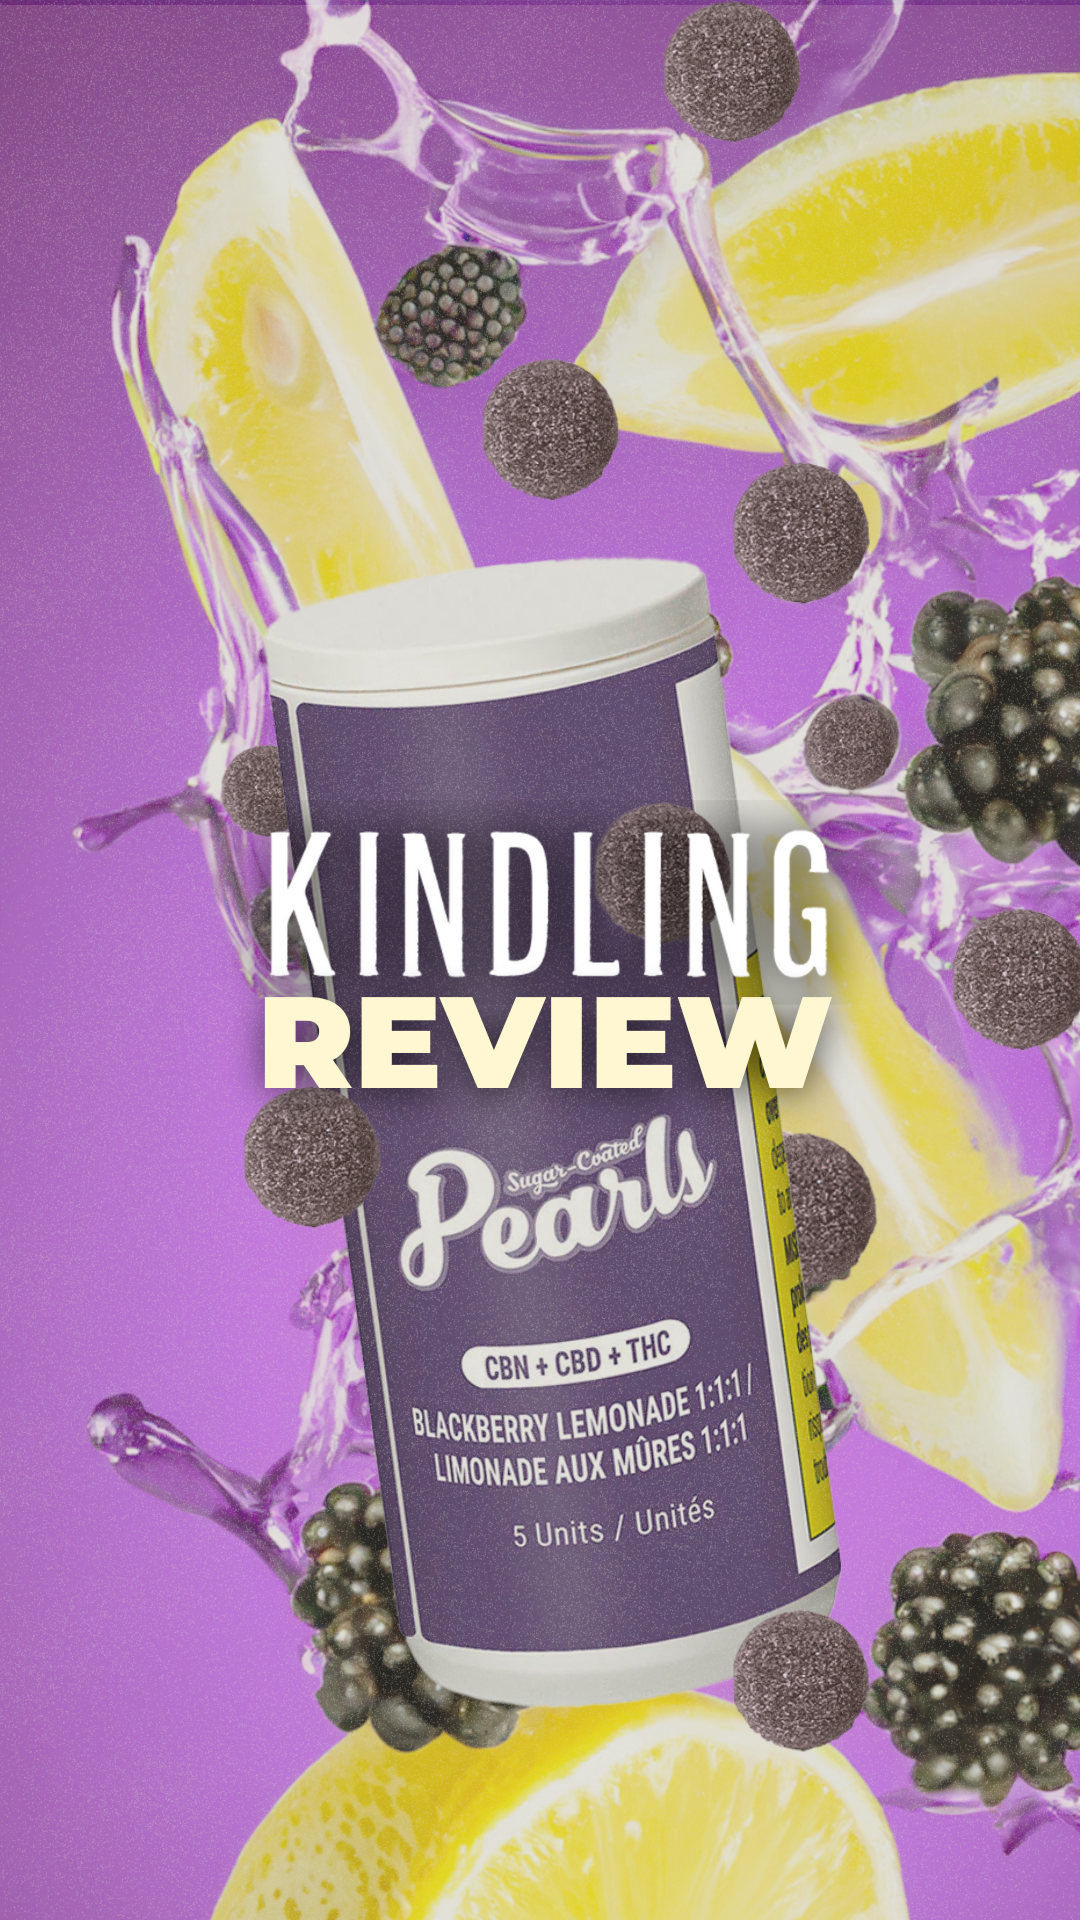 REVIEW: Pearls - Blackberry Lemonade 1:1:1 CBN/CBD/THC